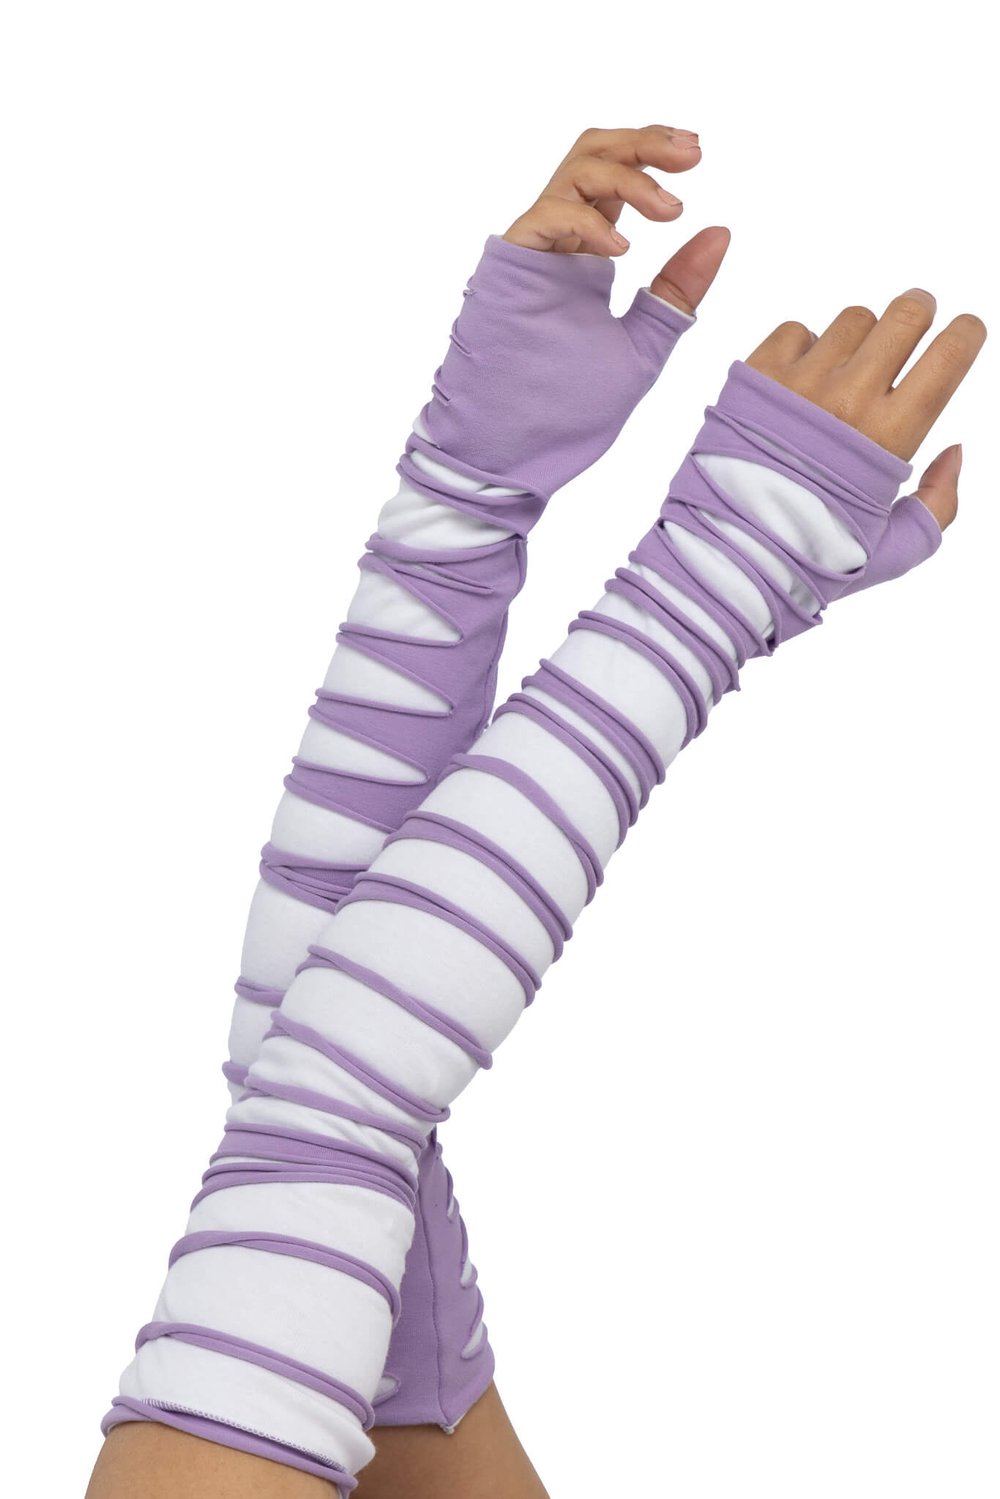 Shredded Gloves